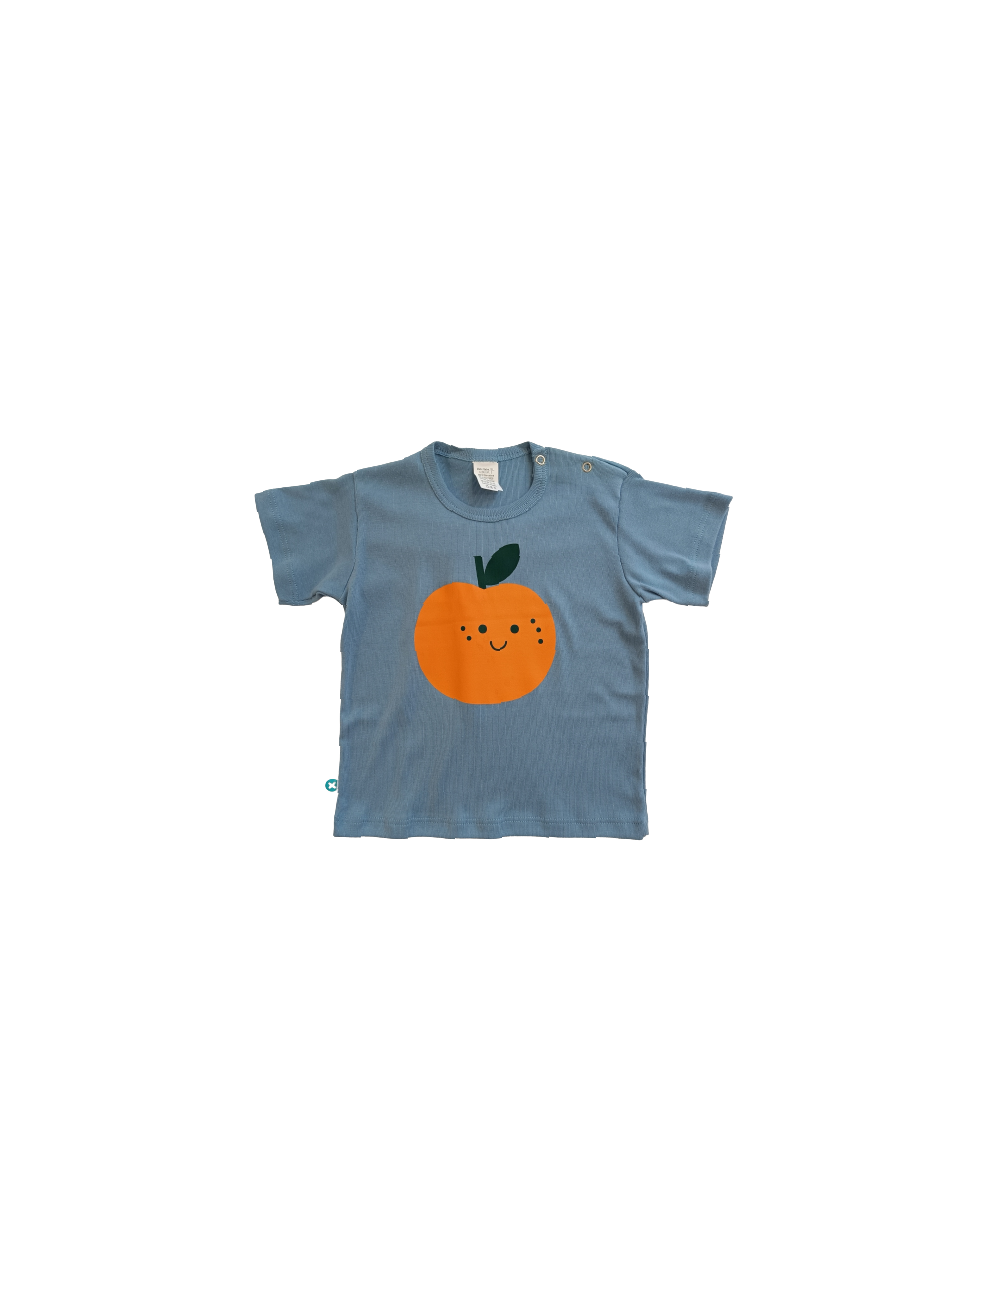 Camiseta manga corta con serigrafia de Naranja con fondo azul.